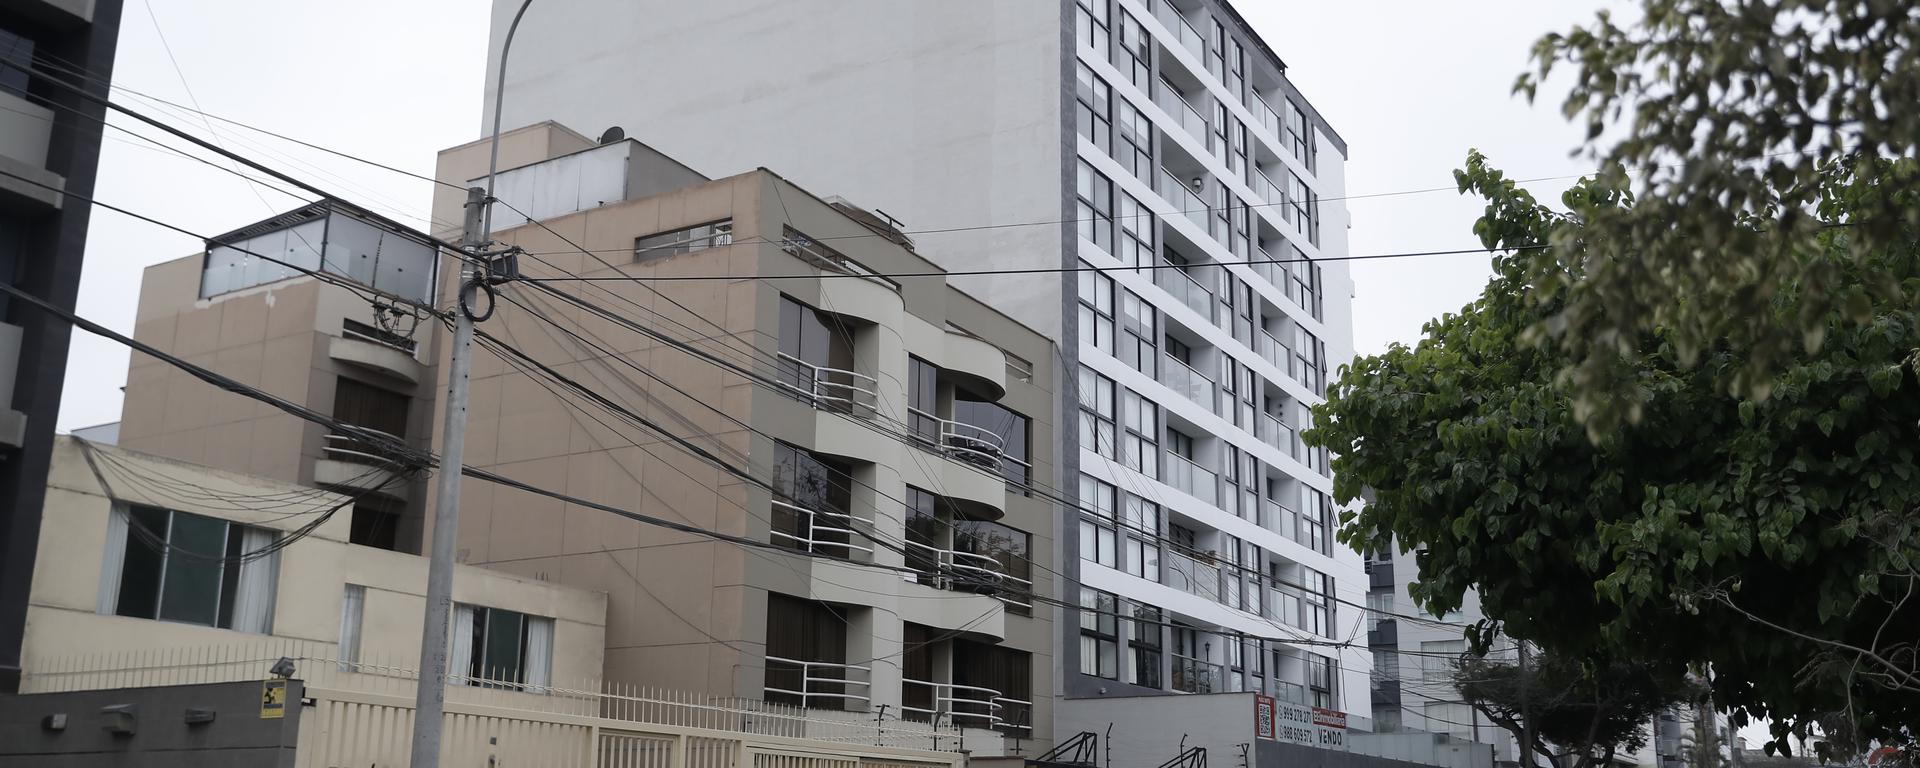 Ordenanzas municipales ilegales afectan zonificación en Surco: conflicto entre vecinos e inmobiliarias